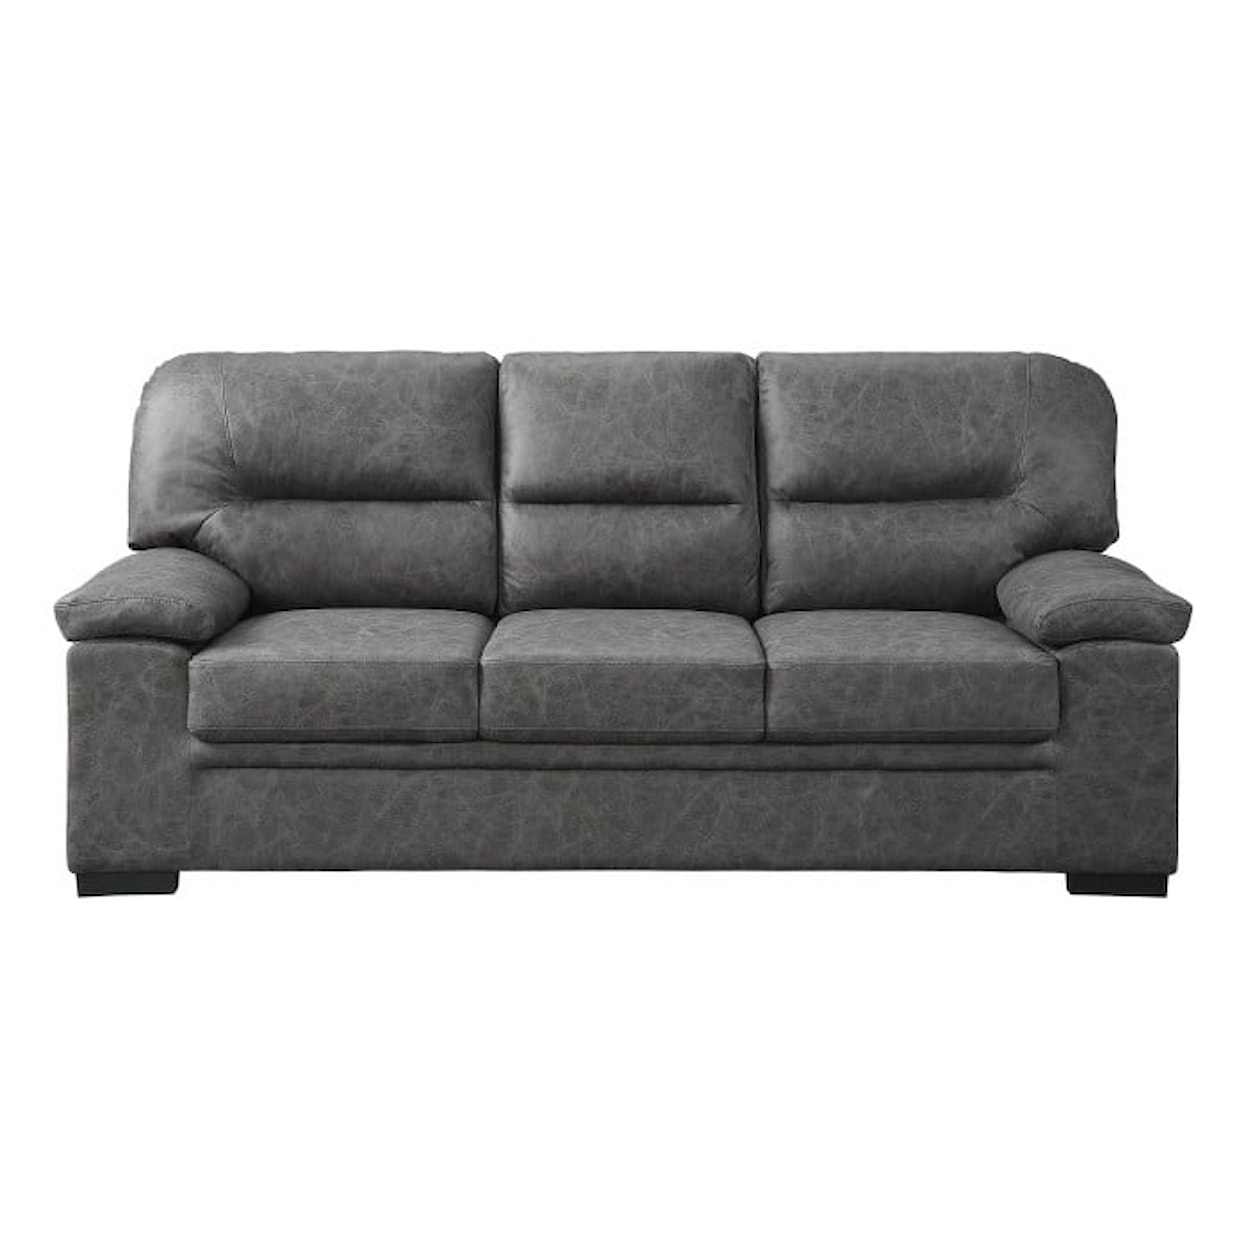 Homelegance Michigan Sofa